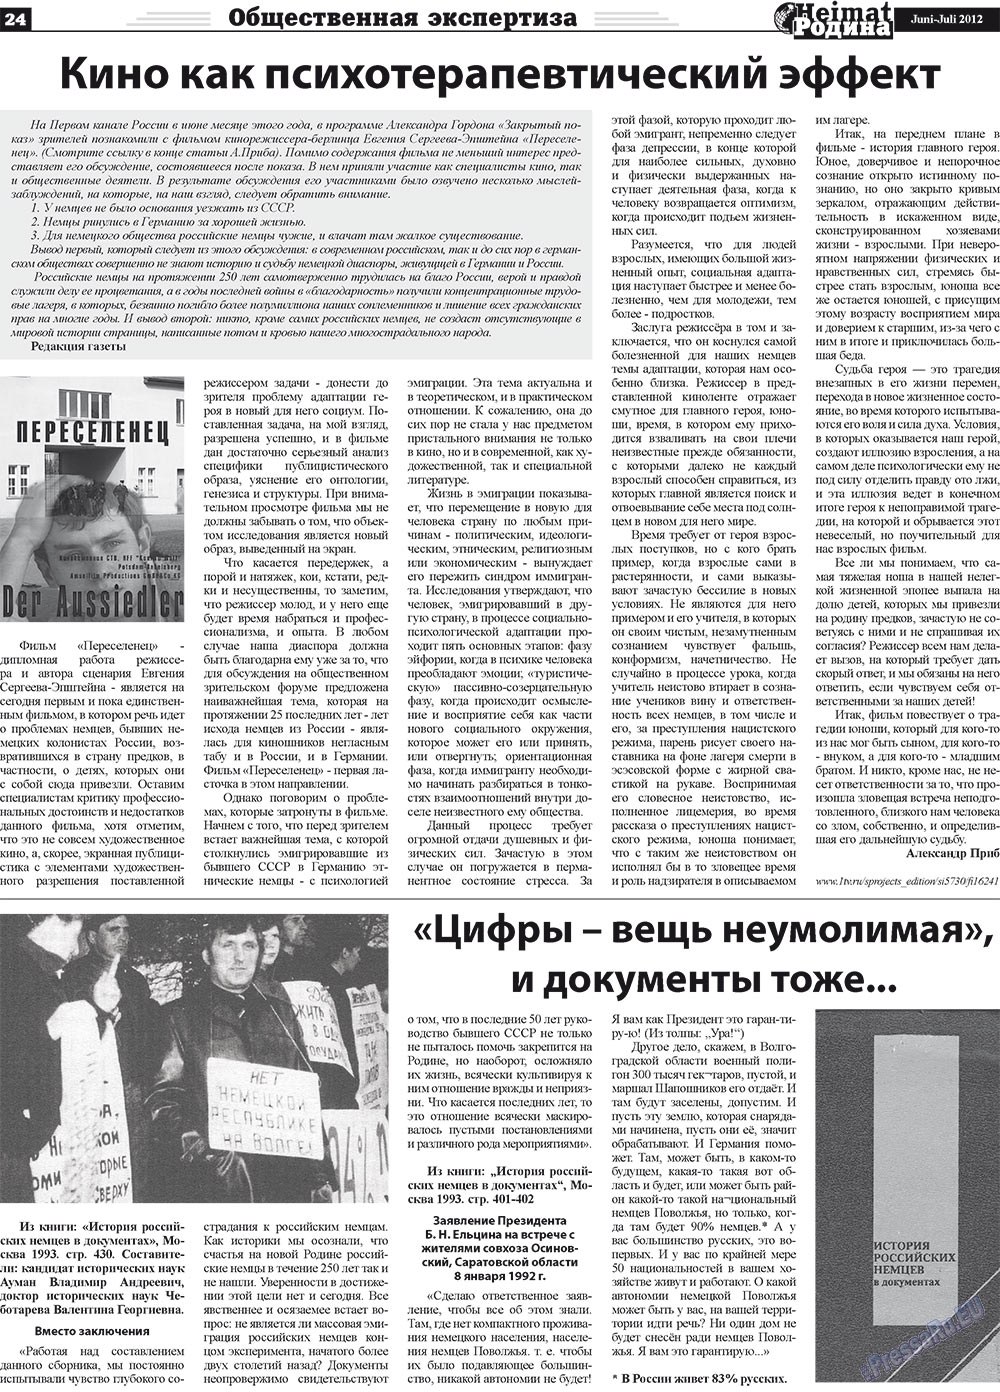 Heimat-Родина (газета). 2012 год, номер 5, стр. 24